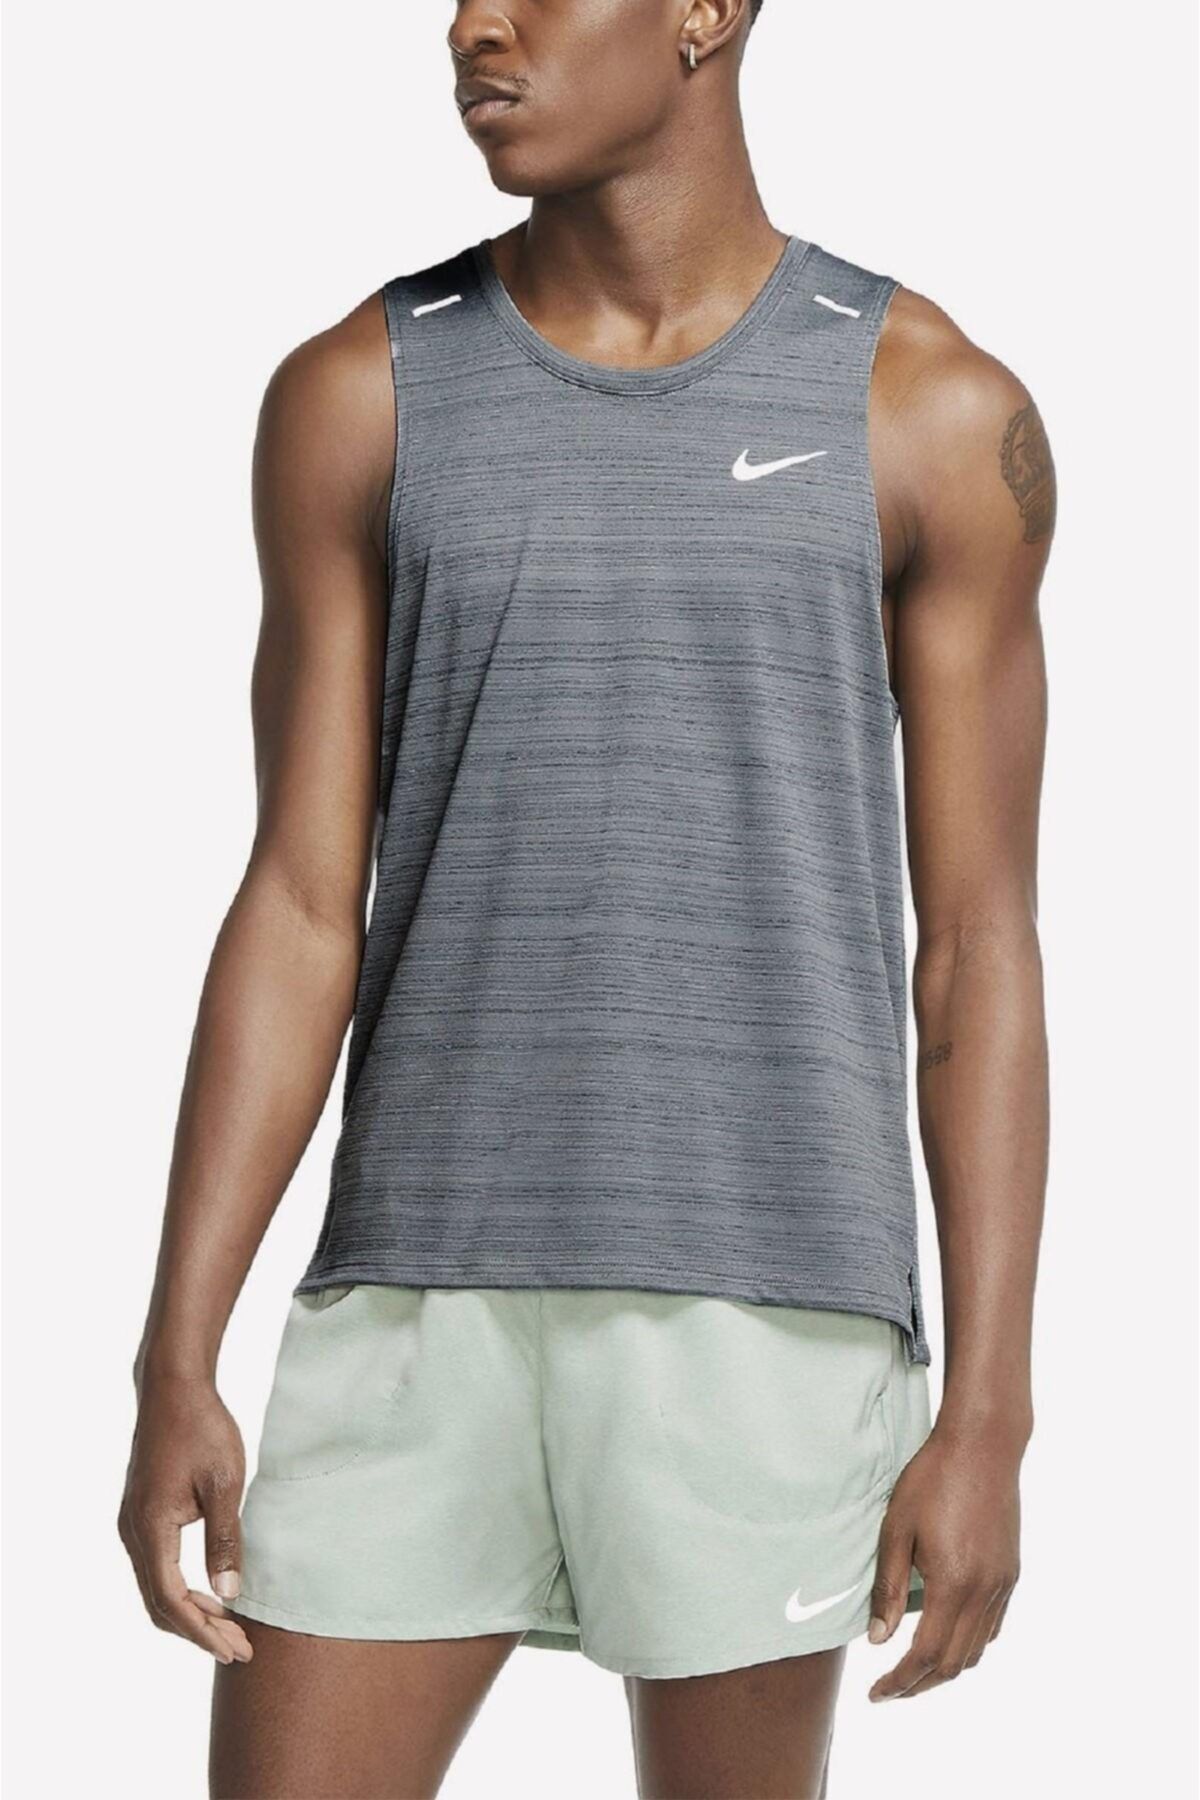 Nike Erkek Atlet Modelleri, Fiyatları Trendyol